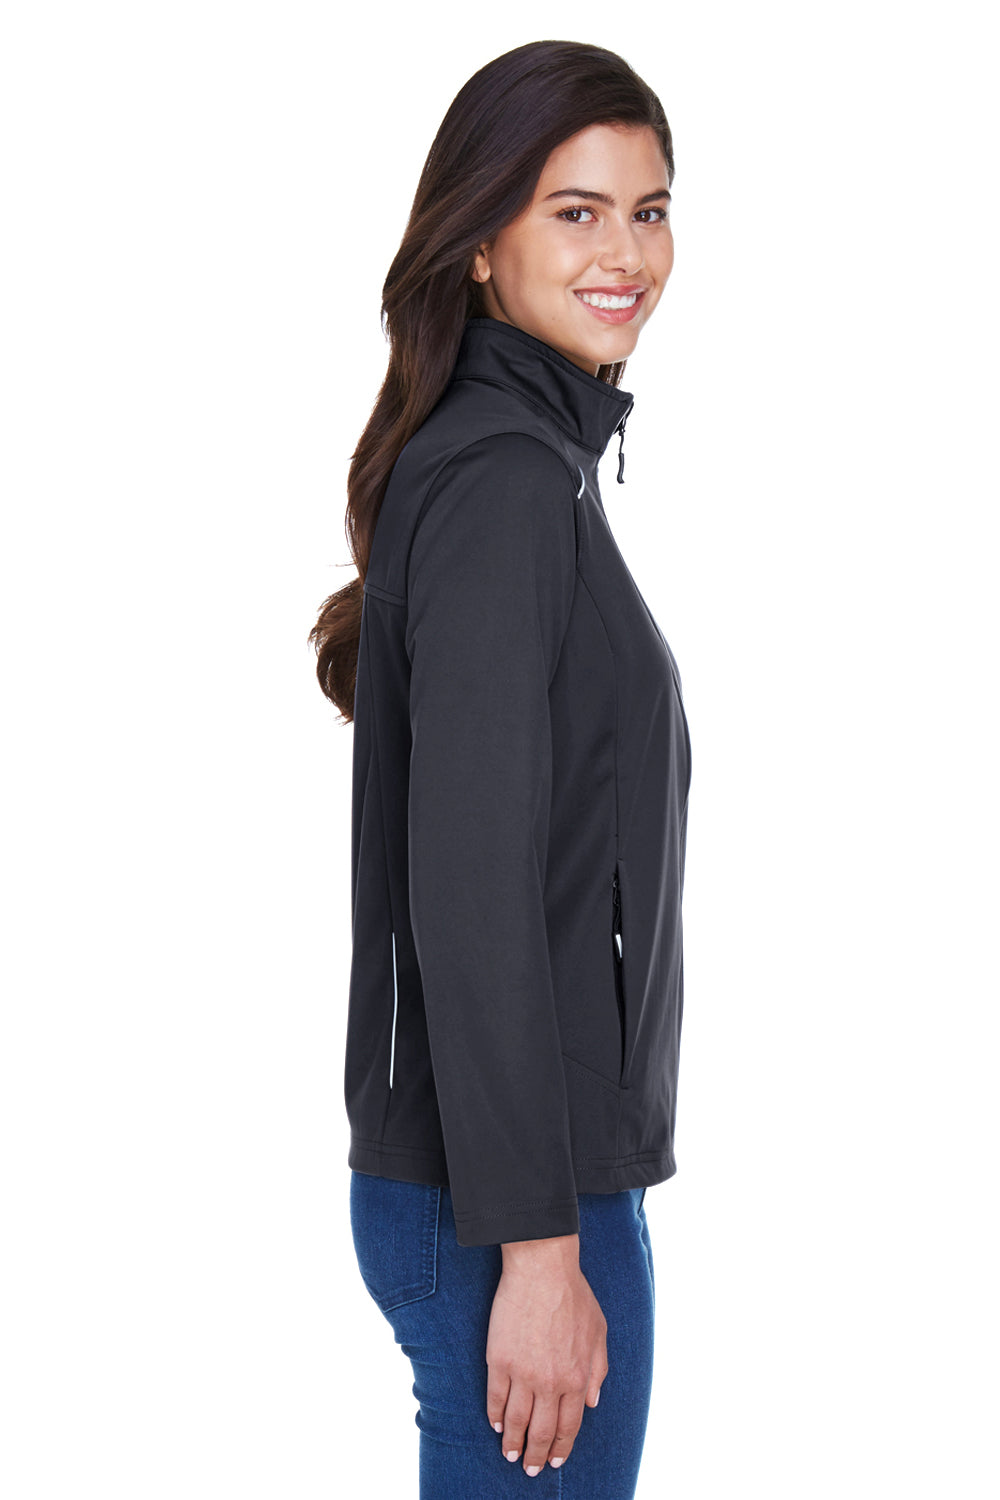 Core 365 CE708W Womens Techno Lite Water Resistant Full Zip Jacket Black Side